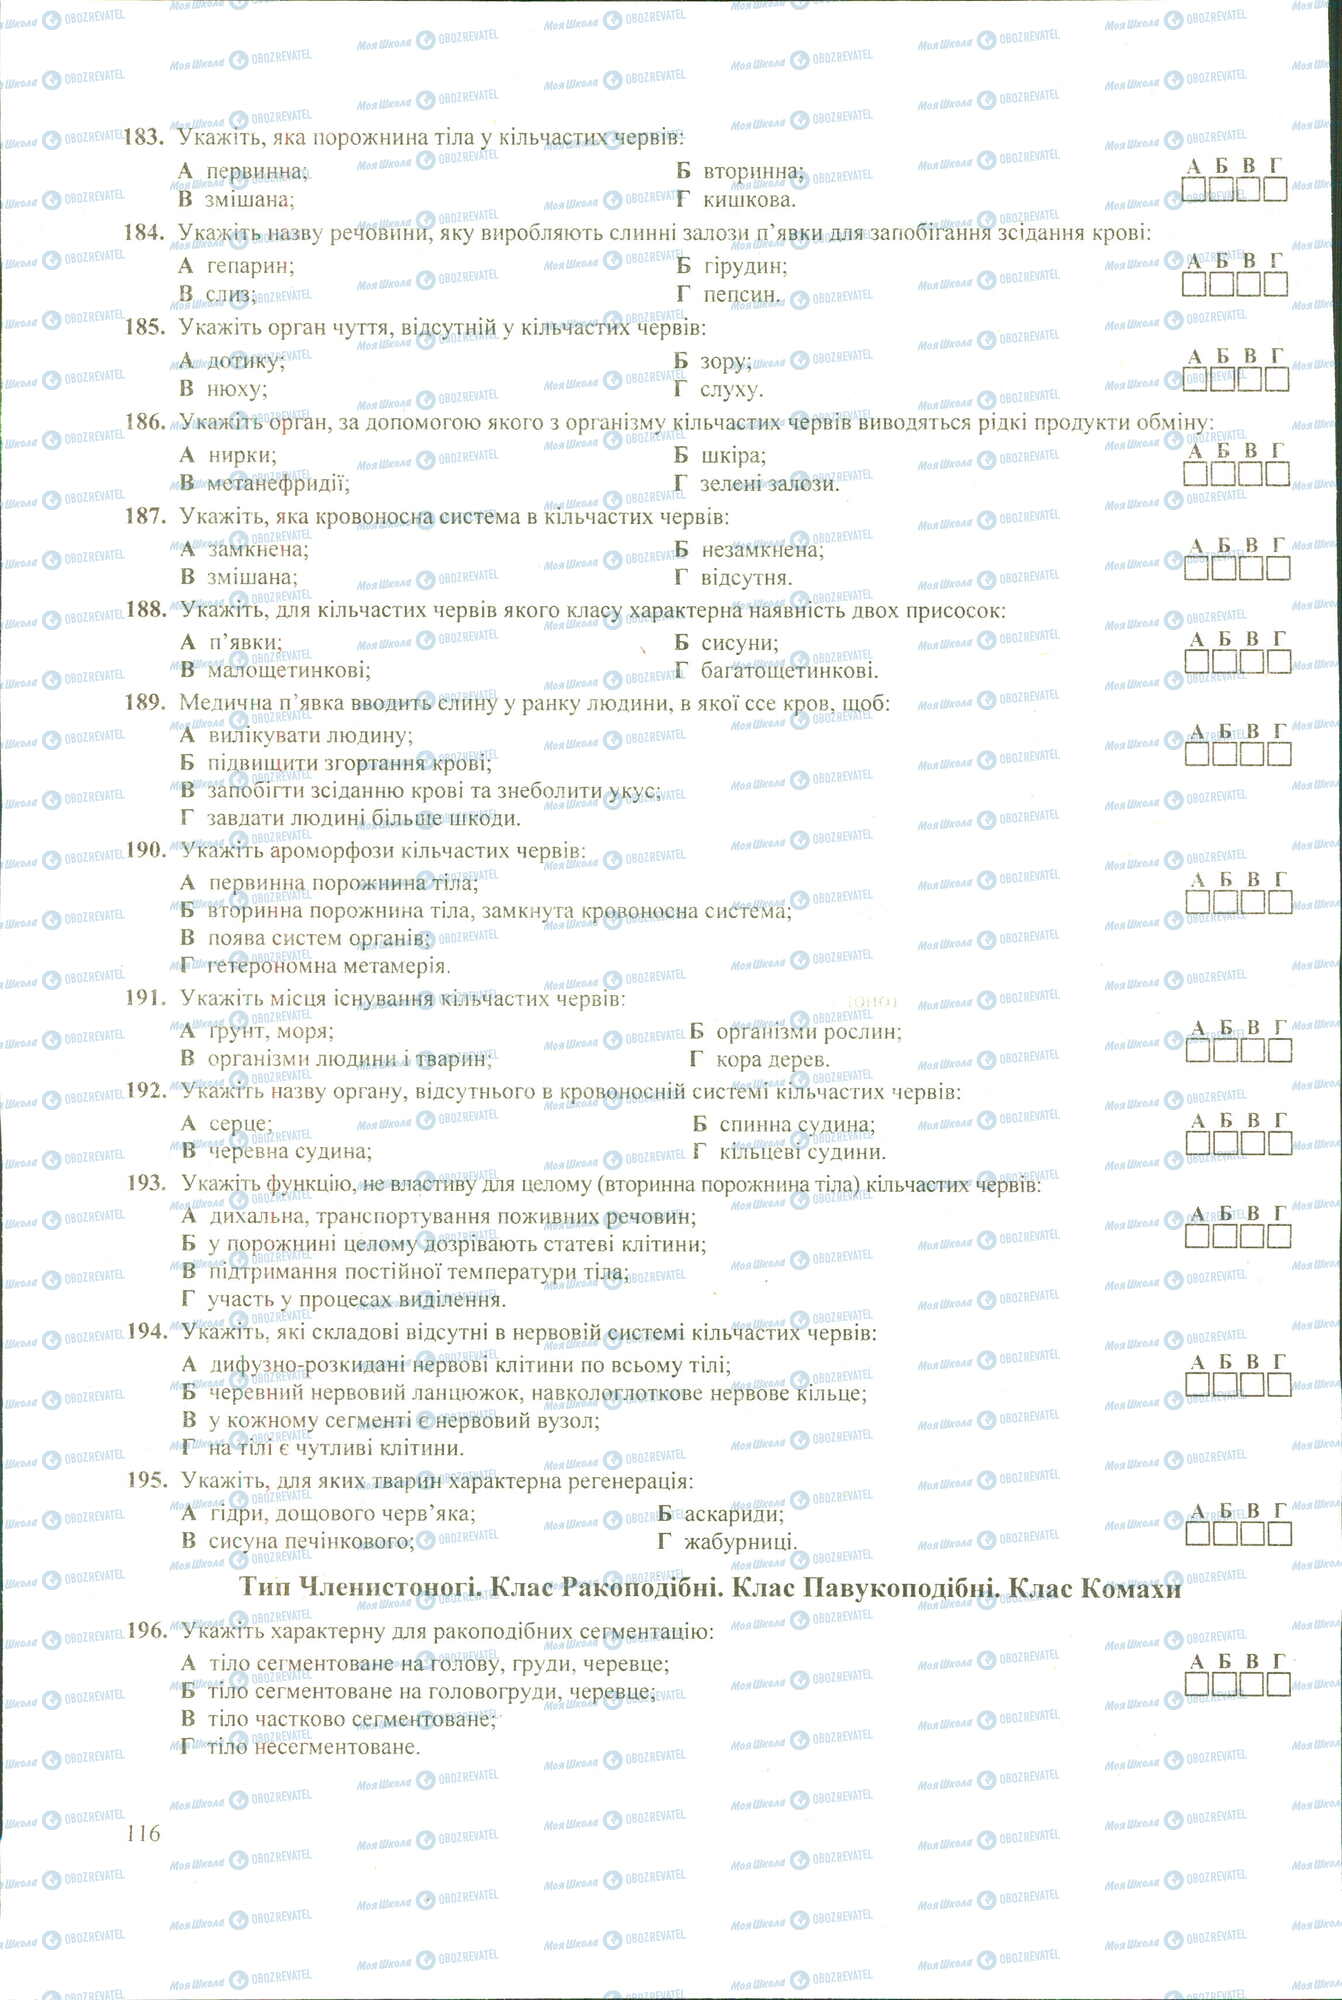 ЗНО Биология 11 класс страница 183-196